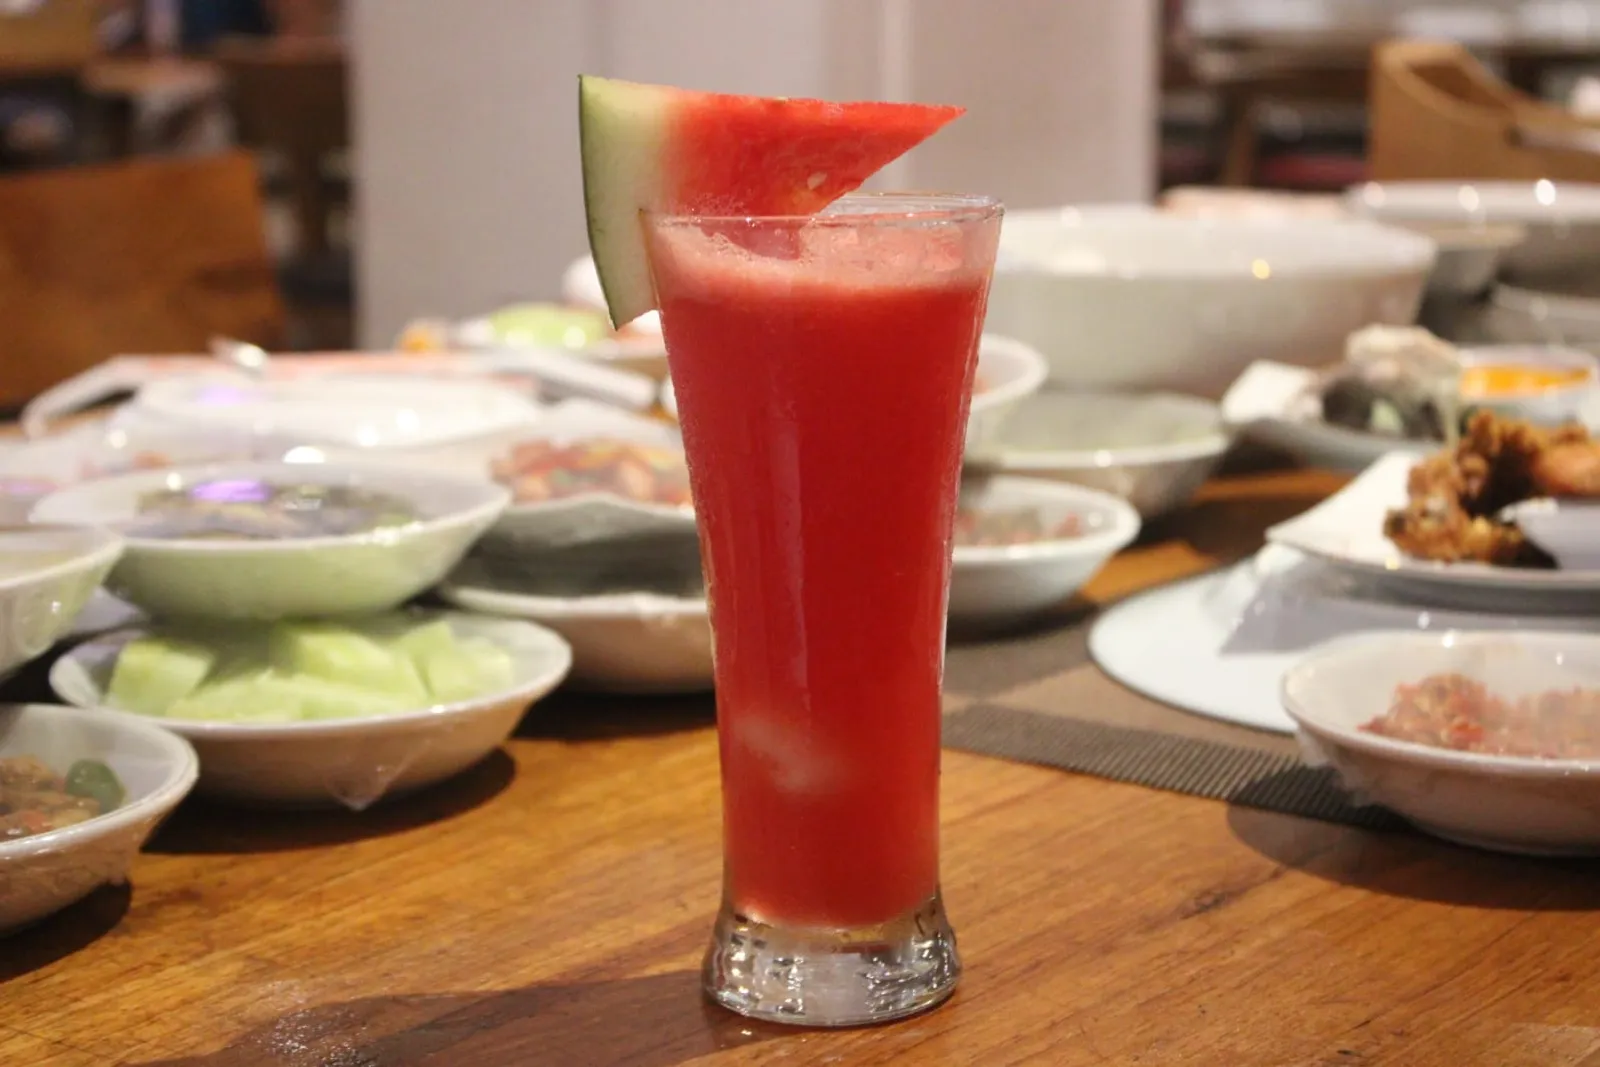 Lezatnya Wisata Kuliner di Padang Merdeka di Kota Tua Jakarta 